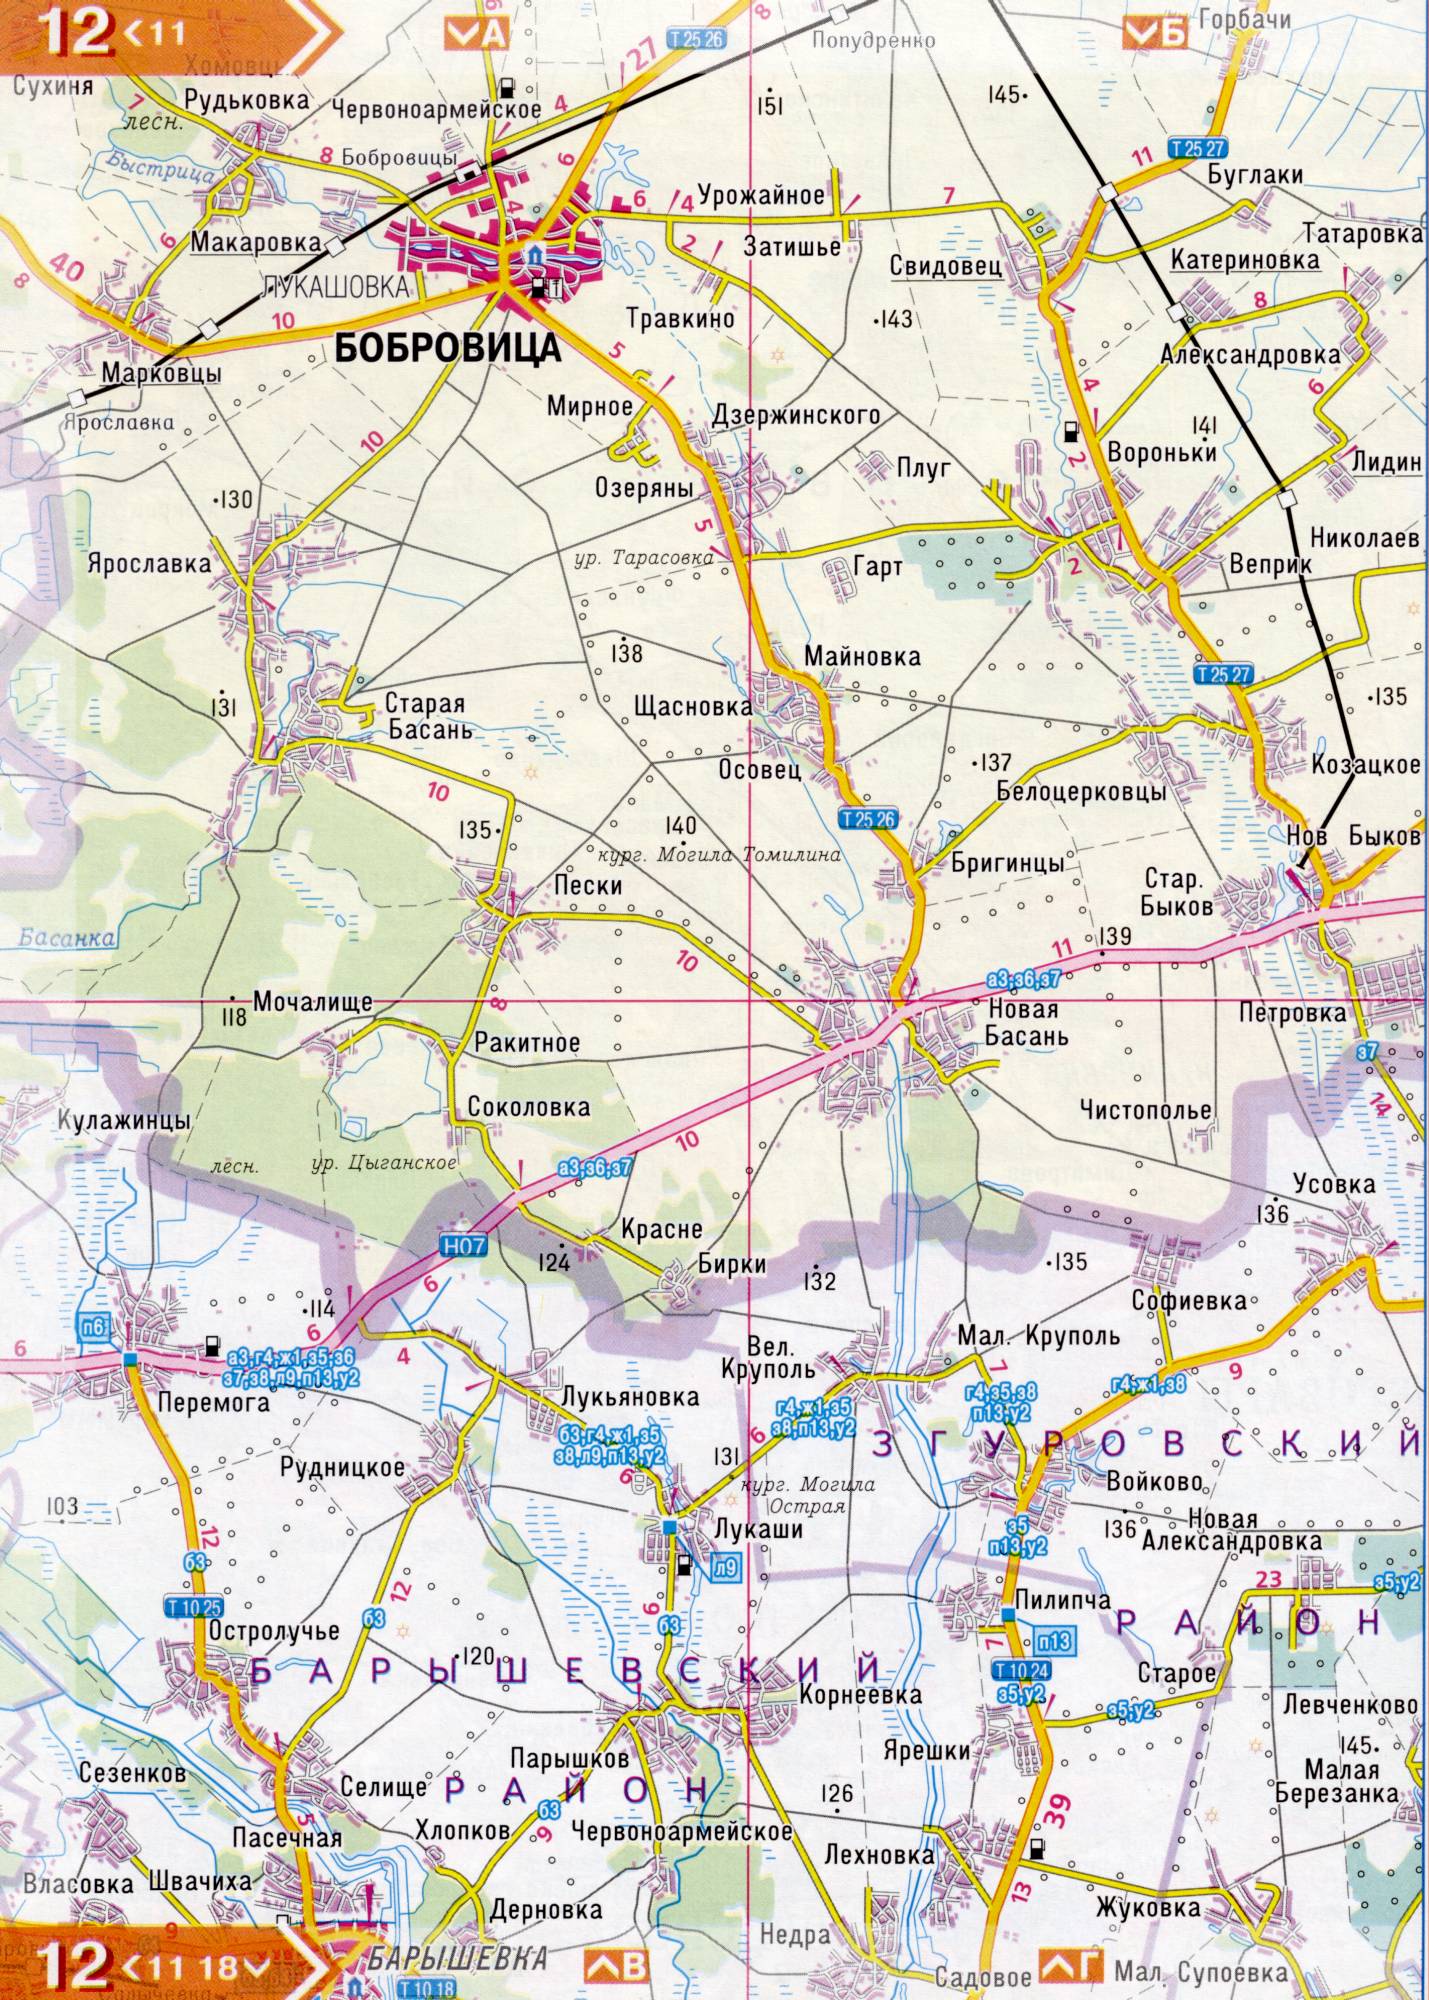 Atlas von der Region Kiew. Eine detaillierte Karte der Region Kiew von dem Atlas von Autobahnen. Kiewer Gebiet auf einer detaillierten Karte Maßstab 1cm = 3km. Frei, E2